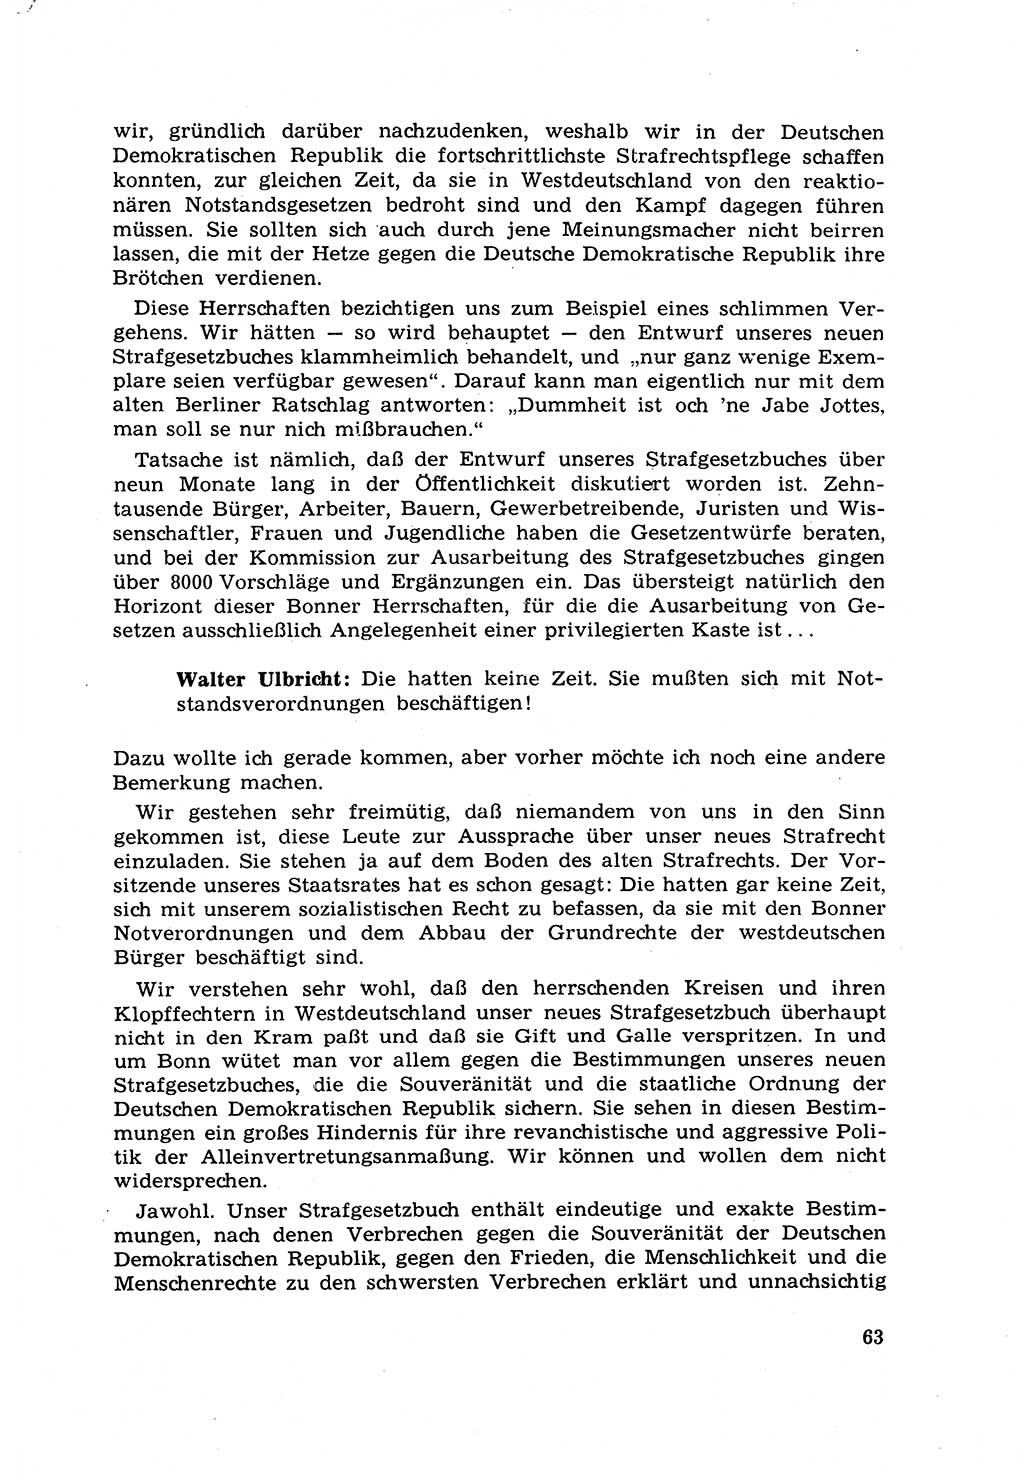 Strafrecht [Deutsche Demokratische Republik (DDR)] 1968, Seite 63 (Strafr. DDR 1968, S. 63)